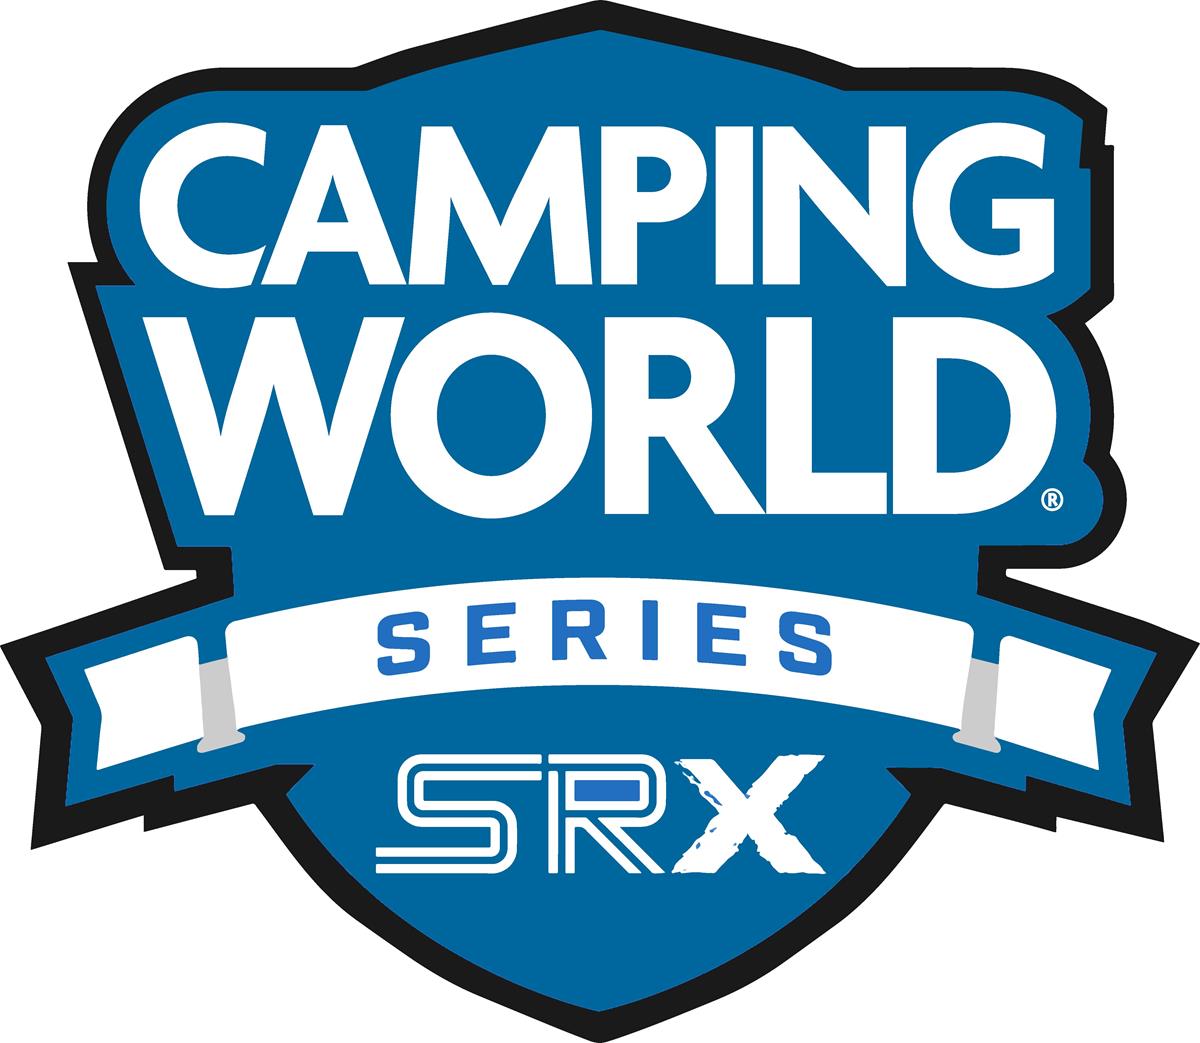 FAQ for Saturday&#39;s SRX Racing event: